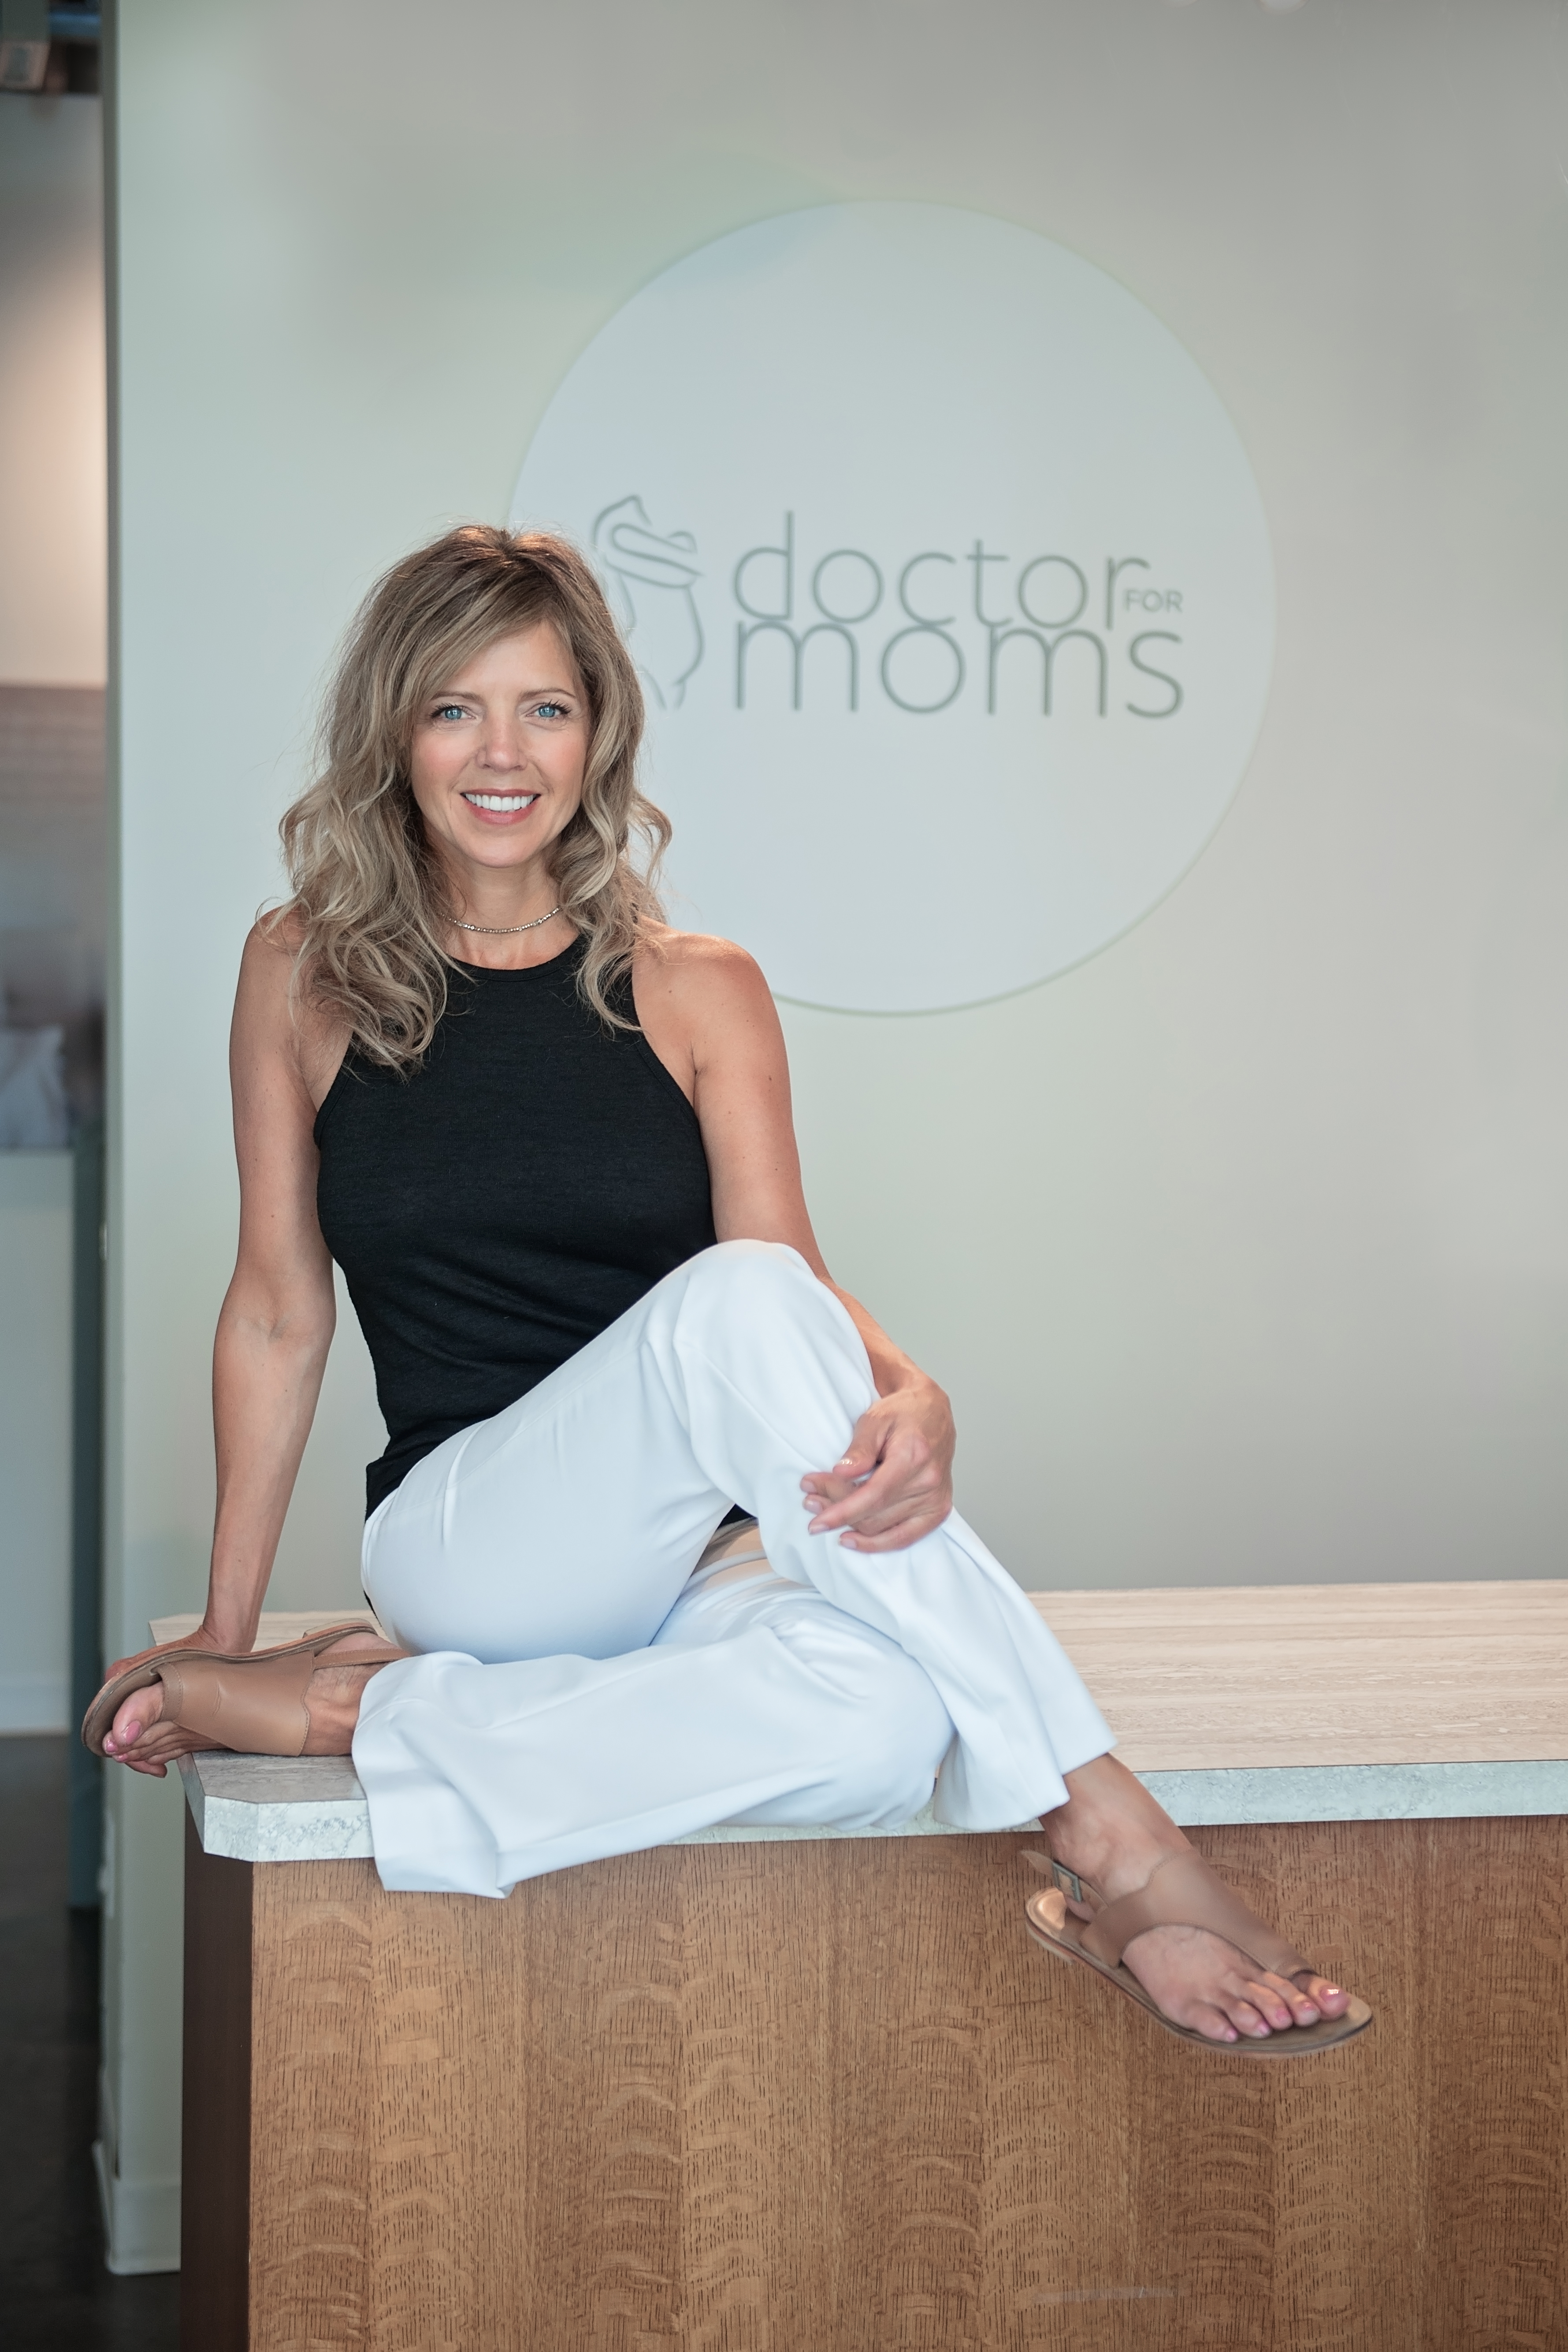 Dr.  For  Moms - Dr.  Patricia  Hort